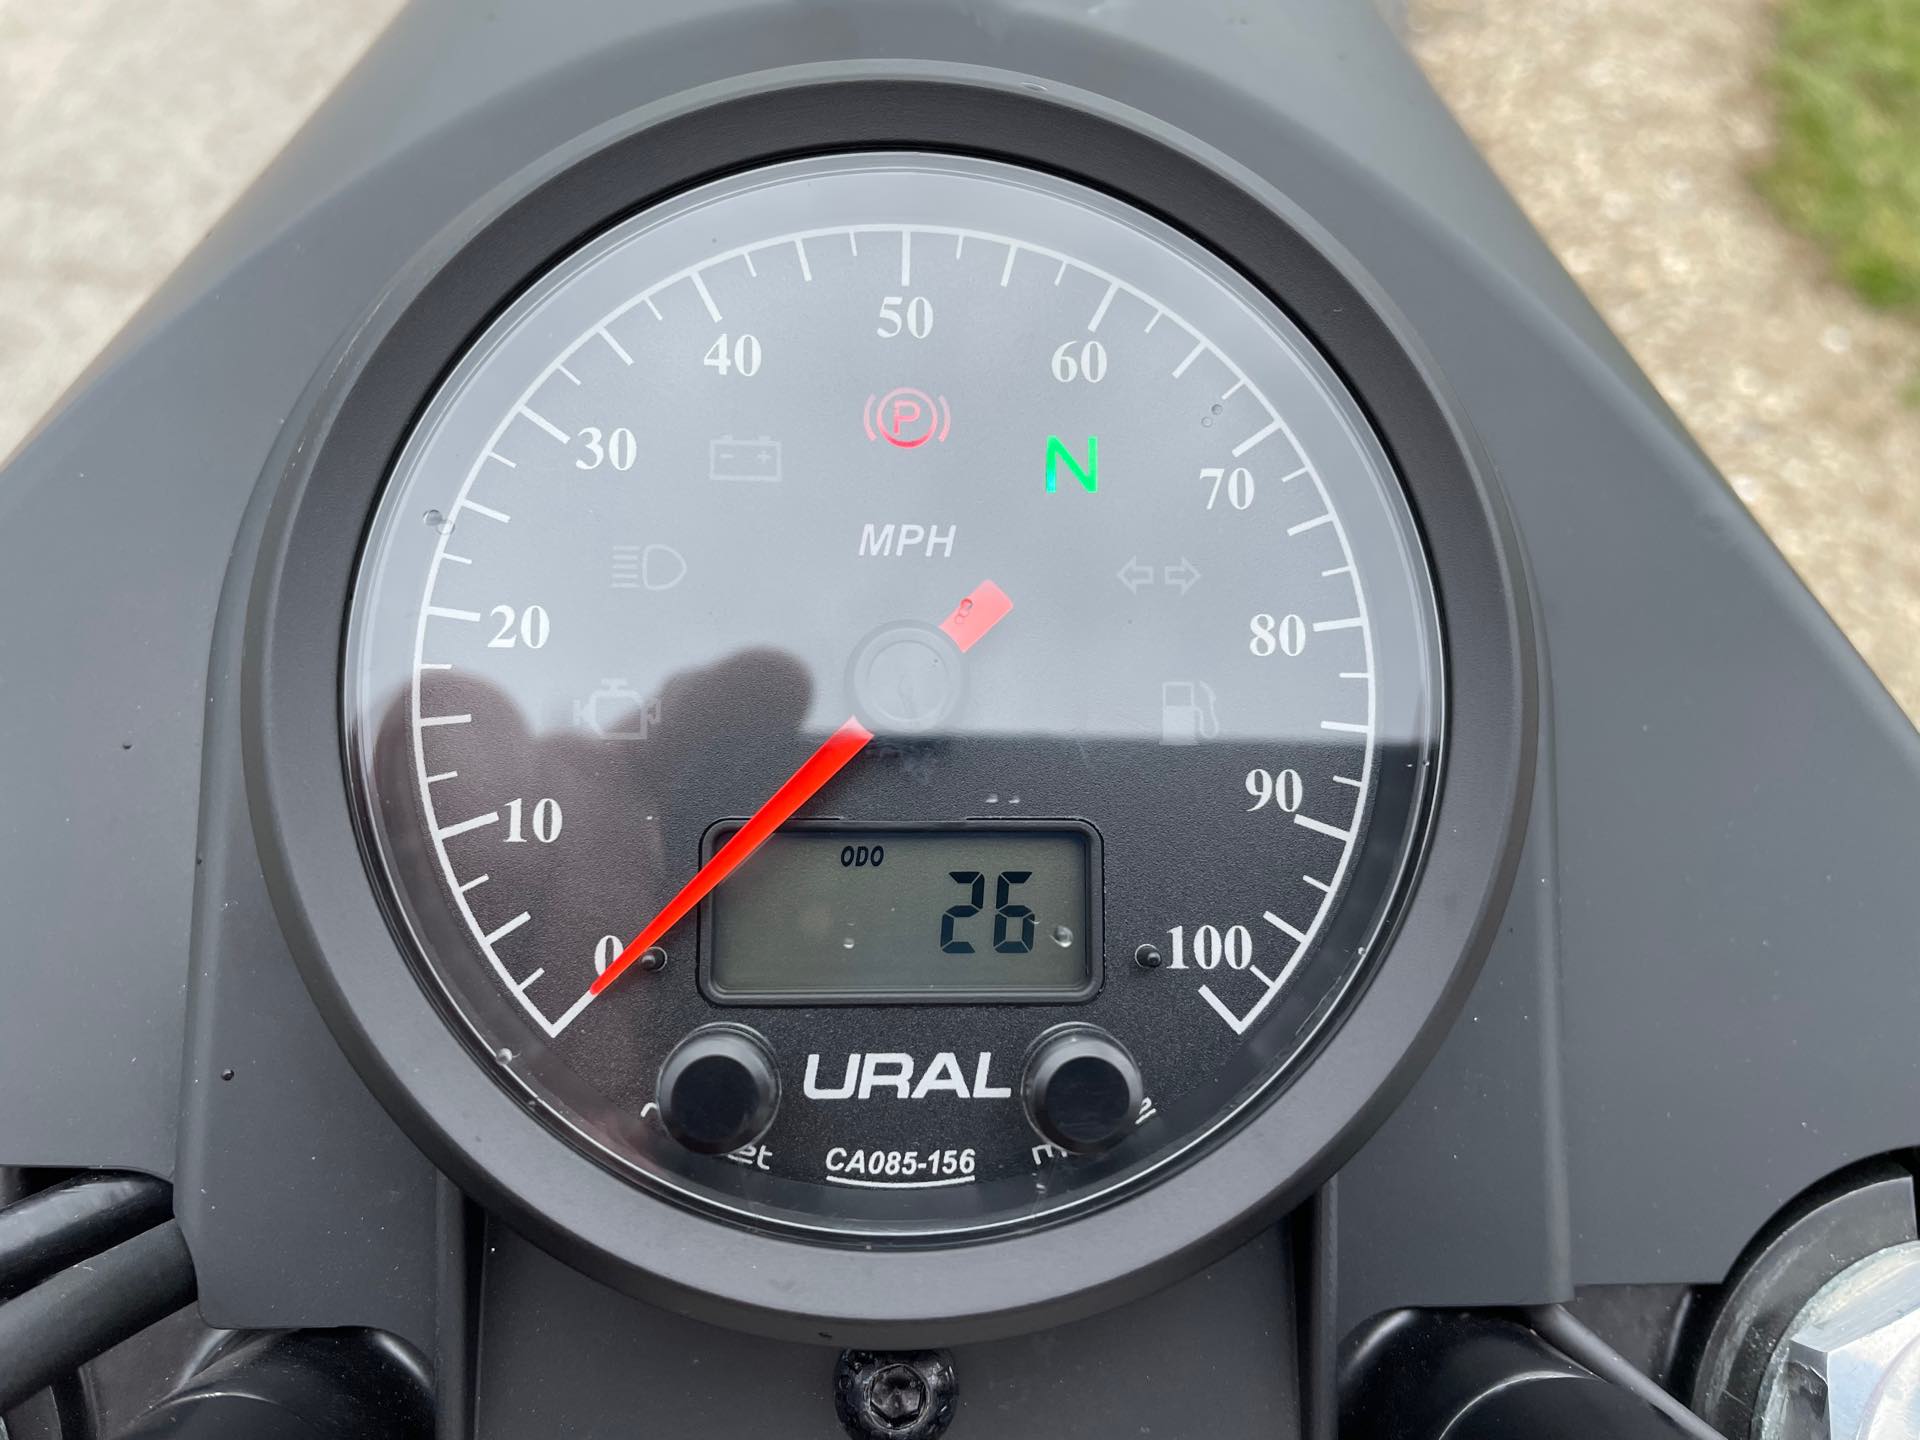 2021 Ural Gear-Up 750 at Randy's Cycle